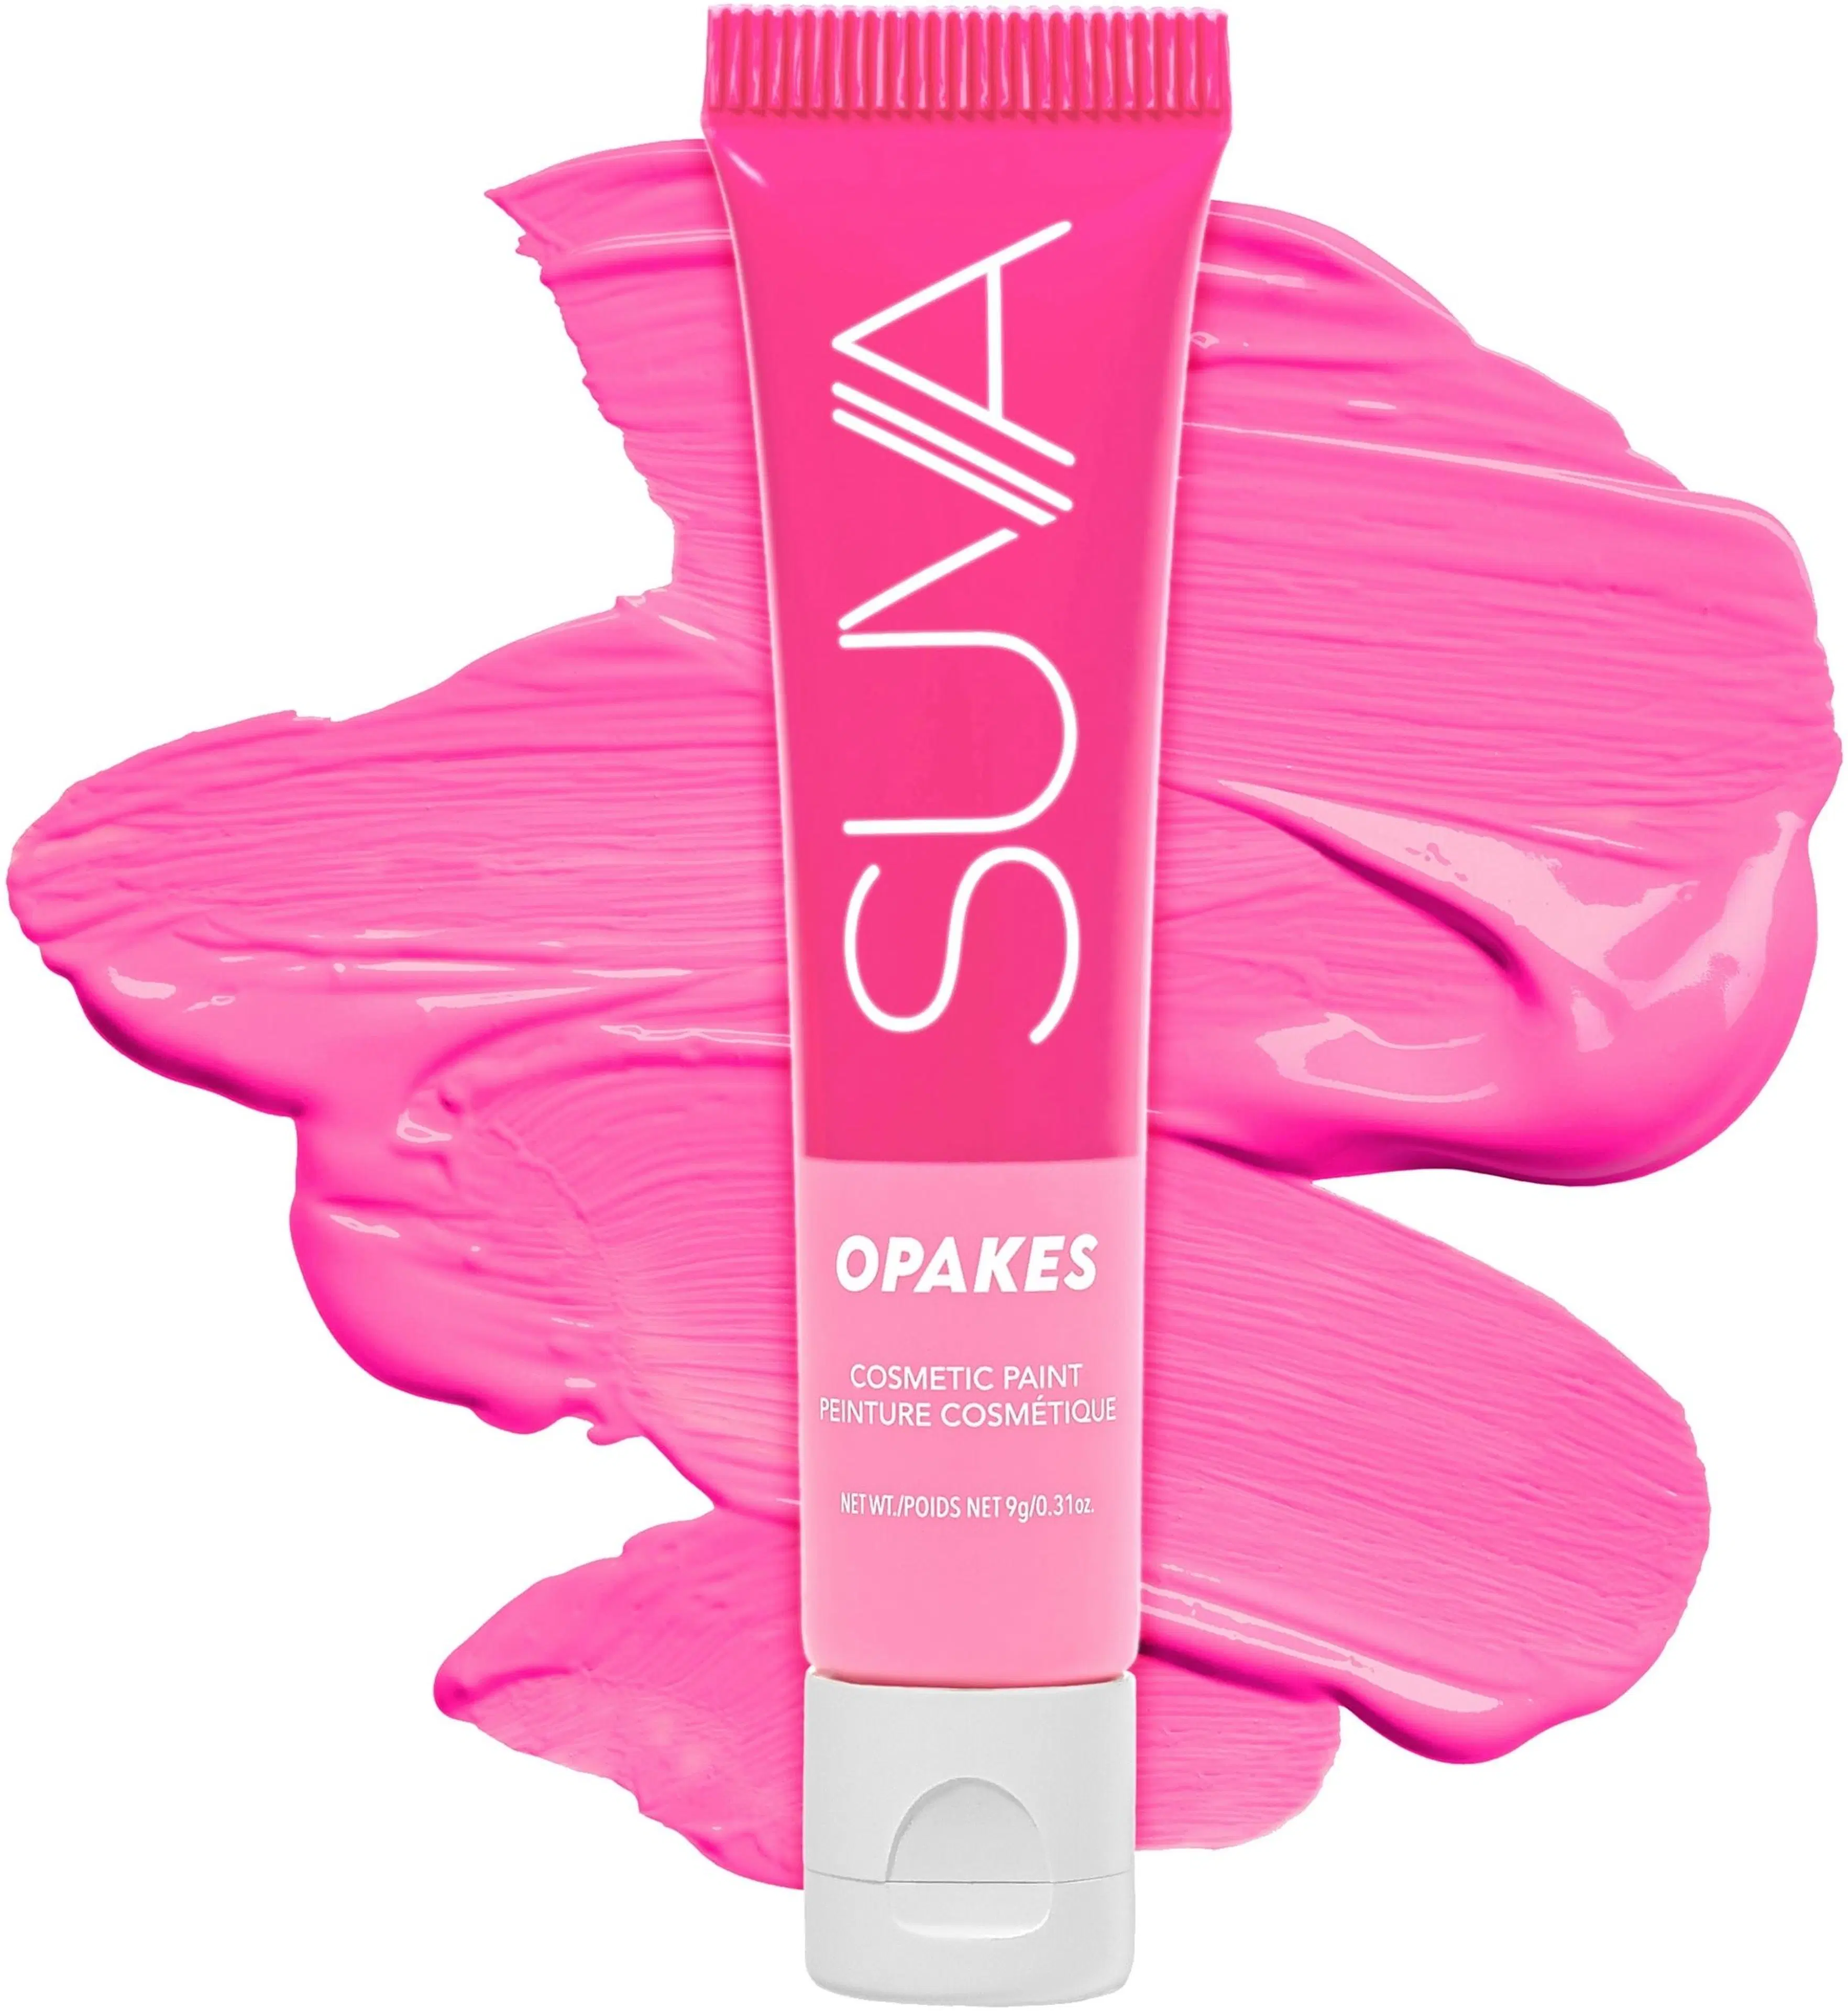 SUVA Beauty Opakes Cosmetic Paint Pogo Pink väri 9g